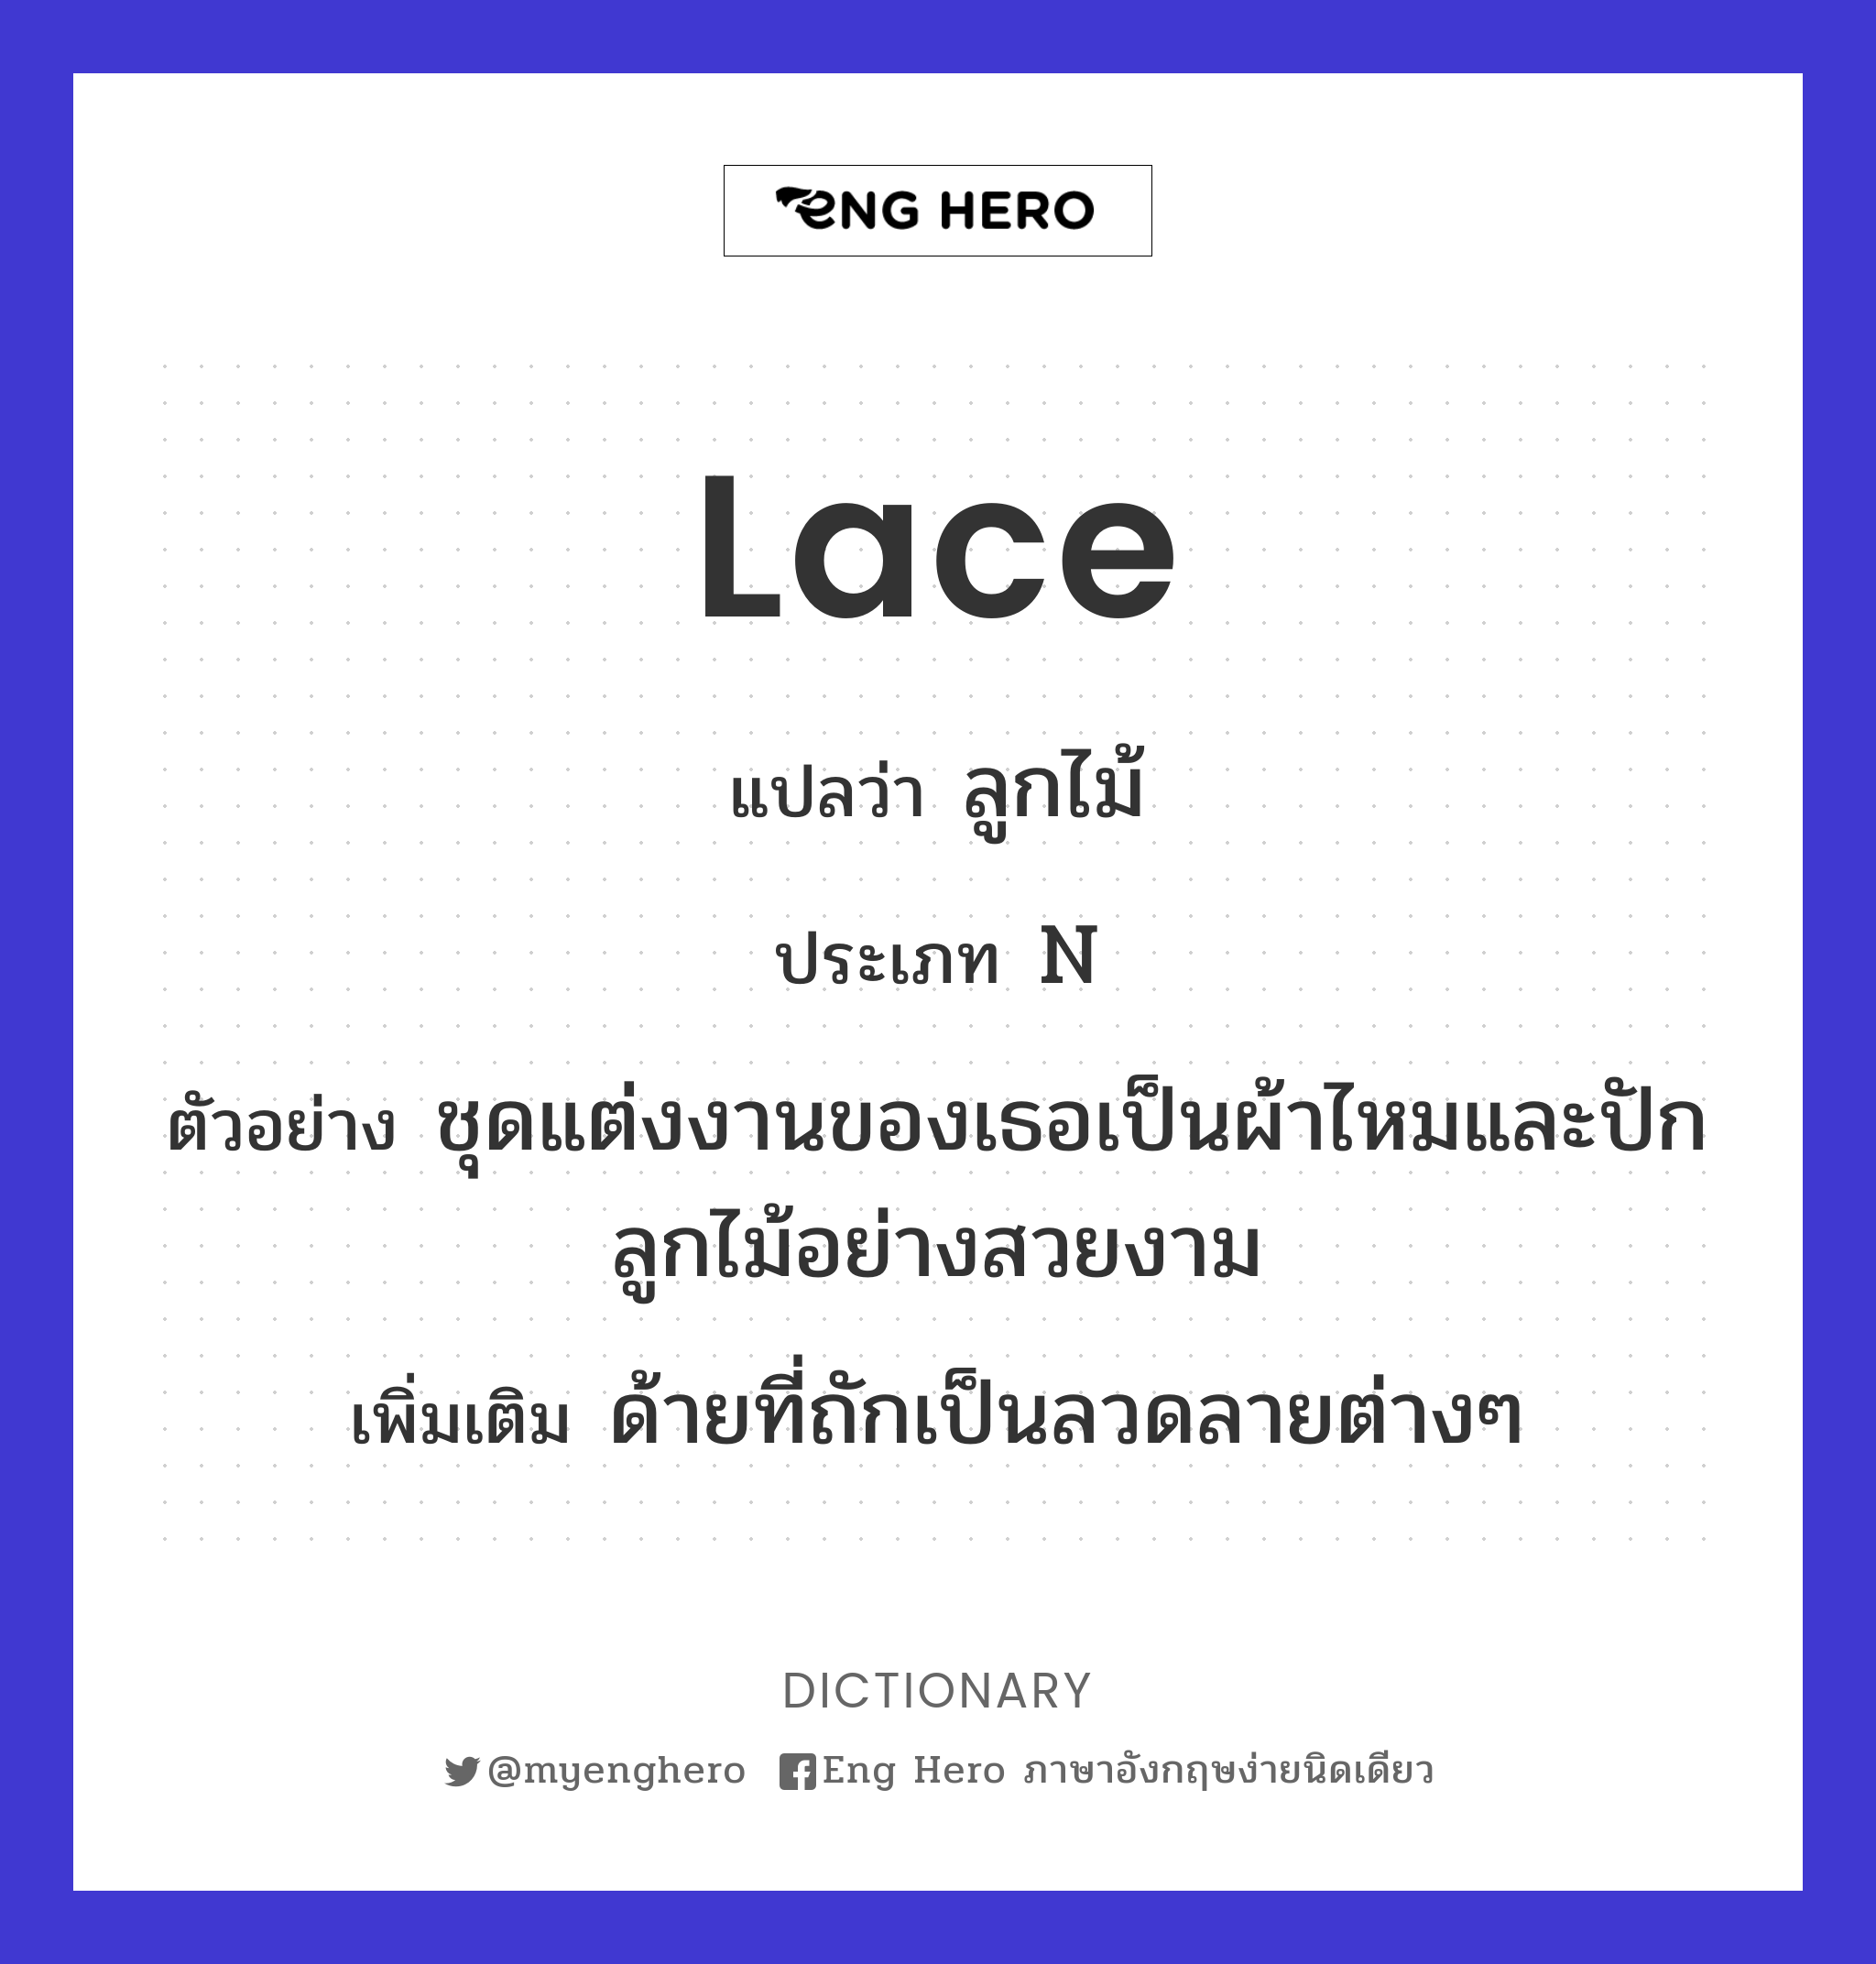 lace